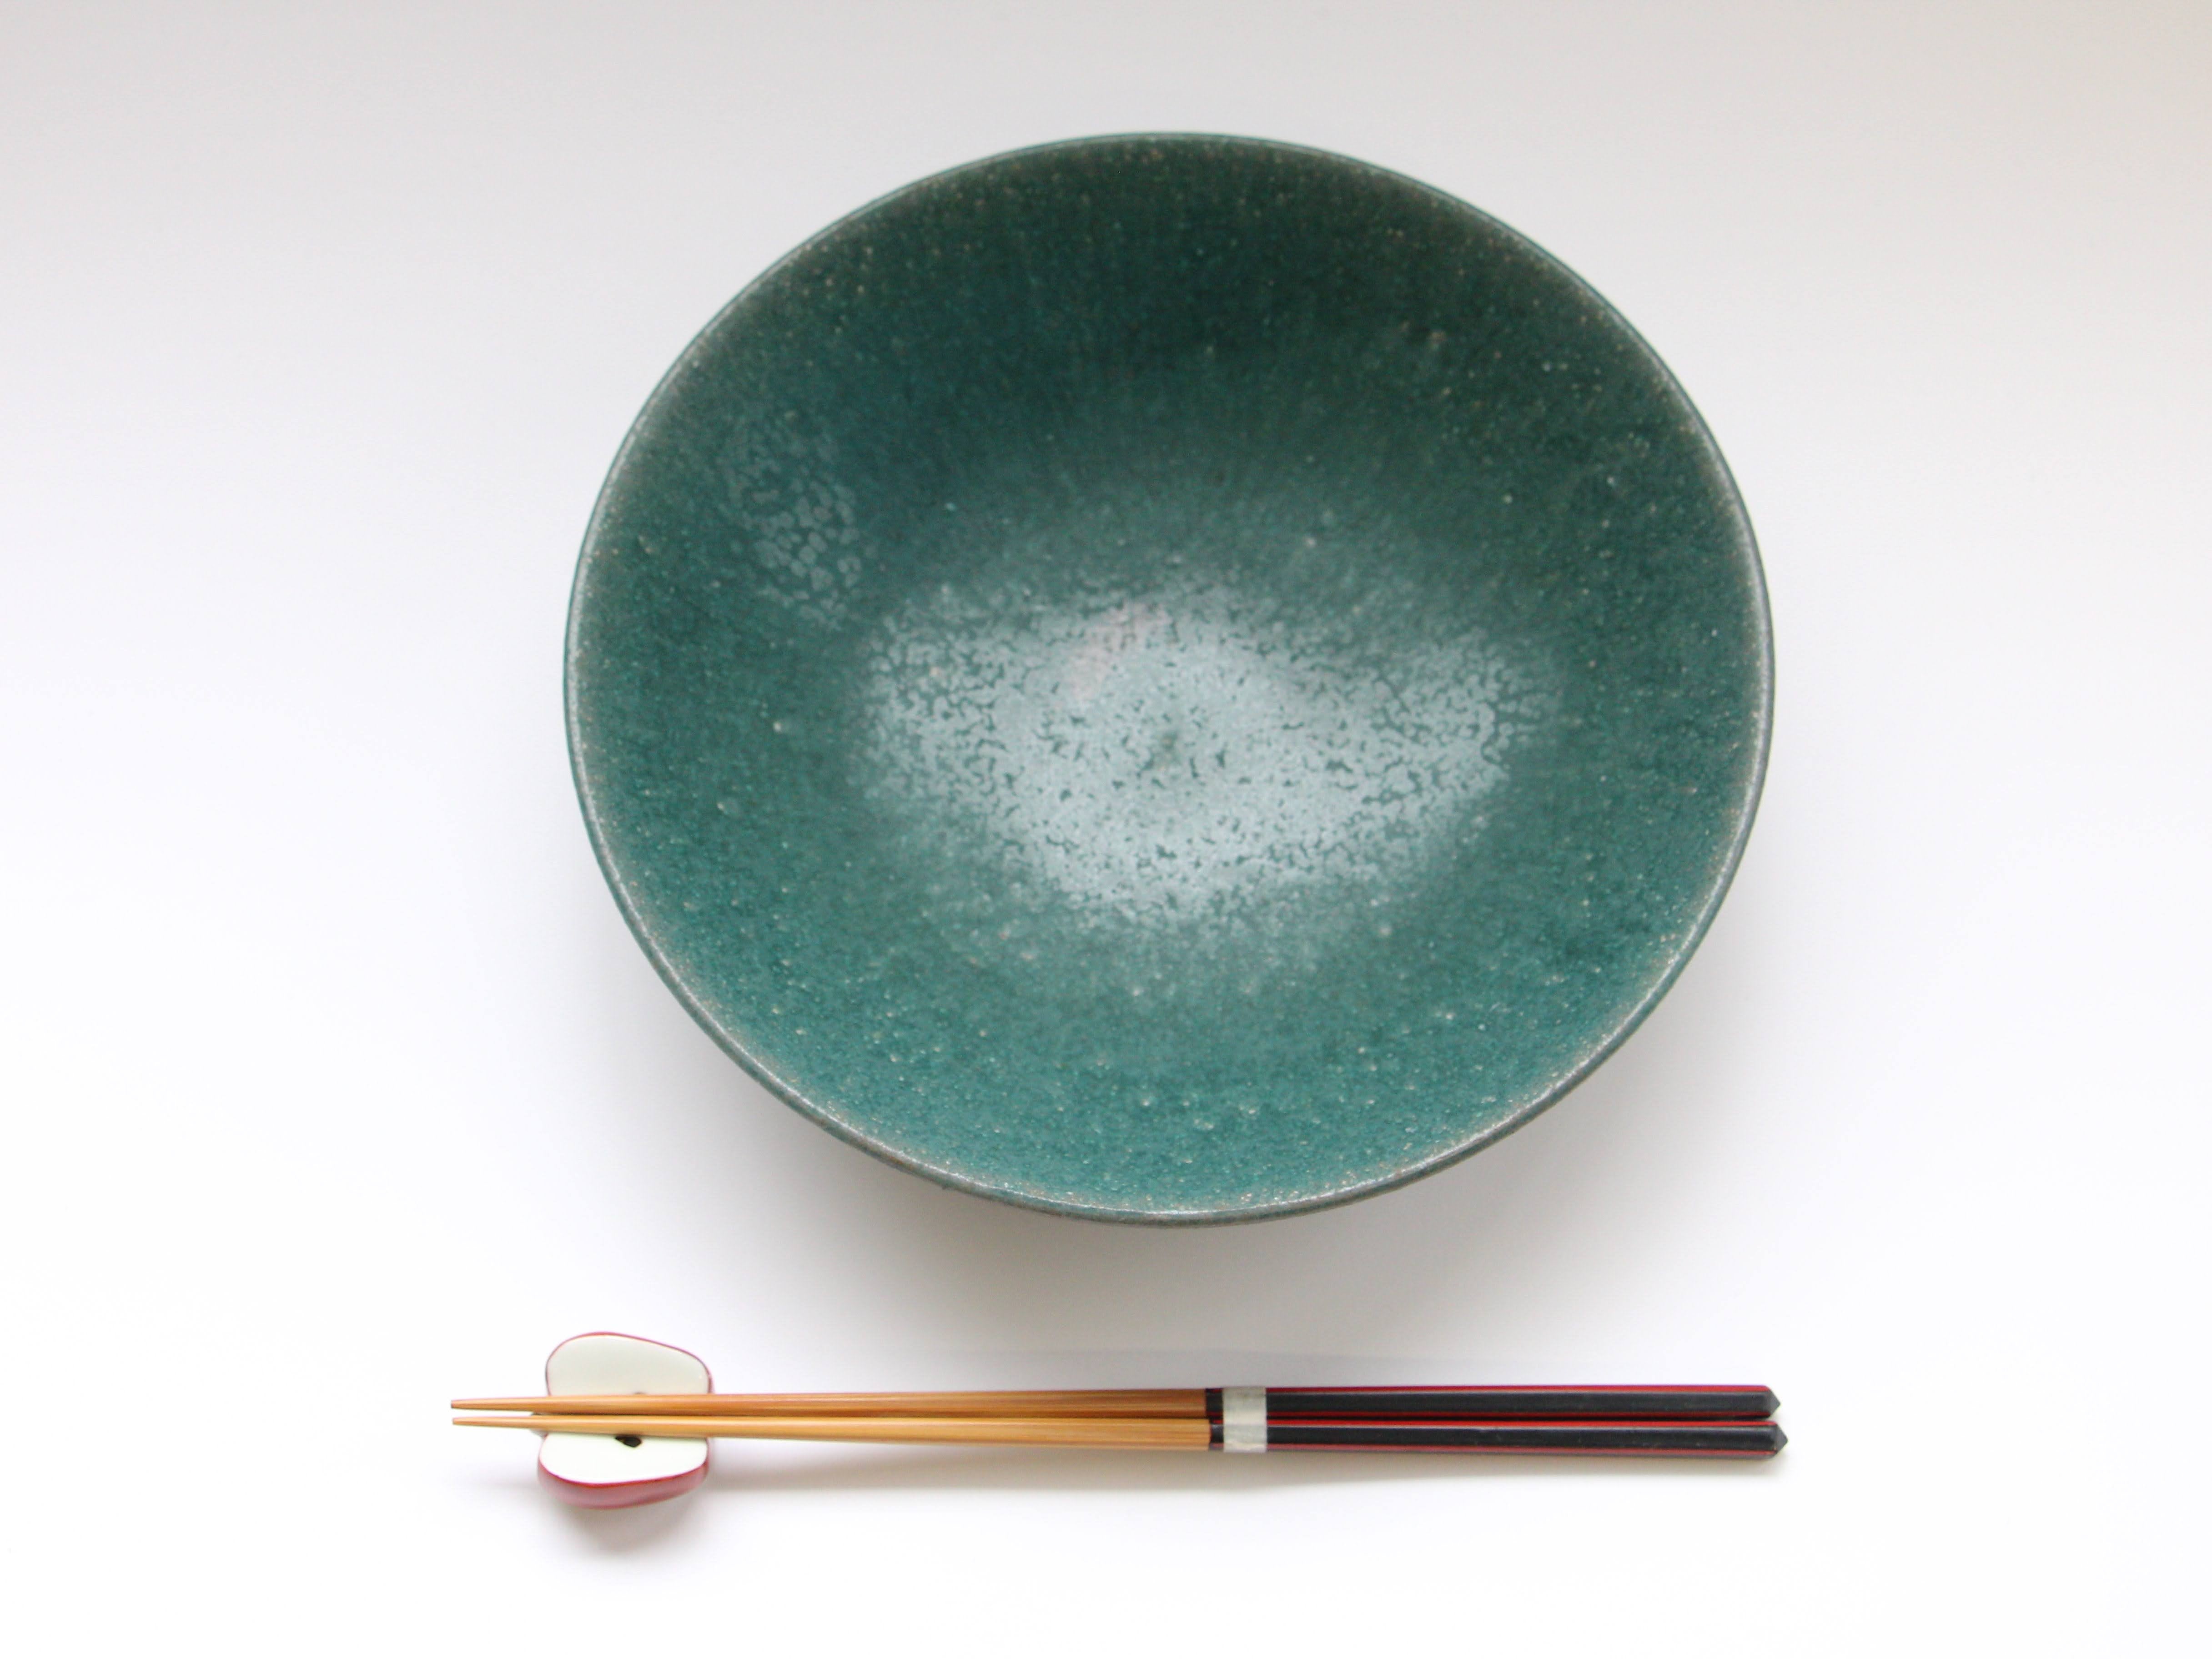 Rust green 7 inch shallow bowl [Bunzan Kanae]